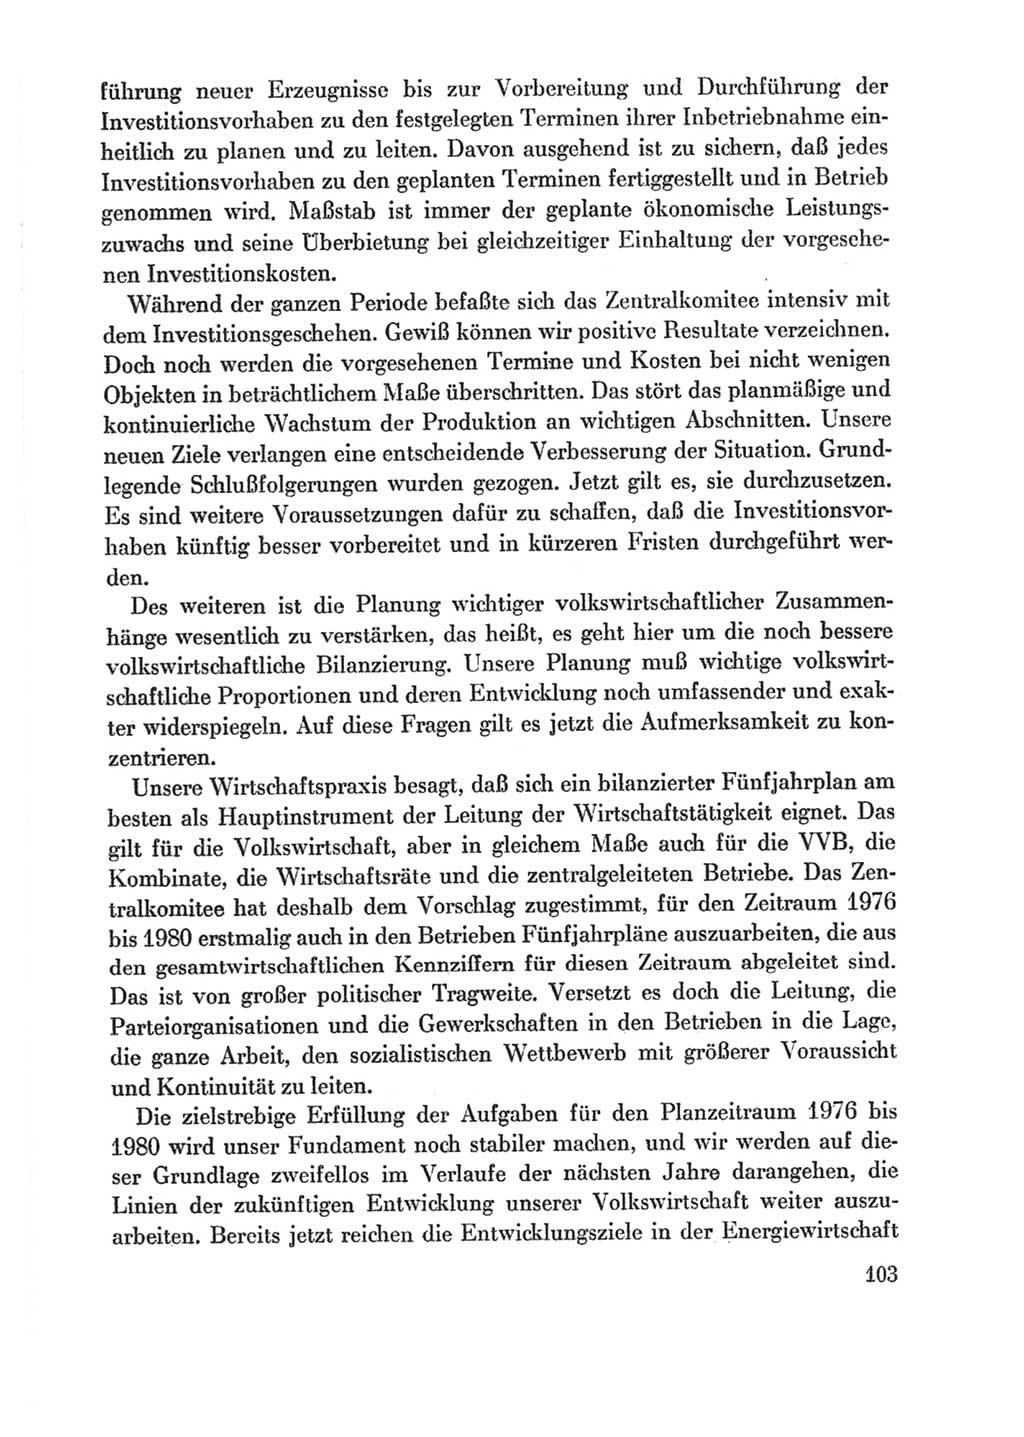 Protokoll der Verhandlungen des Ⅸ. Parteitages der Sozialistischen Einheitspartei Deutschlands (SED) [Deutsche Demokratische Republik (DDR)] 1976, Band 1, Seite 103 (Prot. Verh. Ⅸ. PT SED DDR 1976, Bd. 1, S. 103)